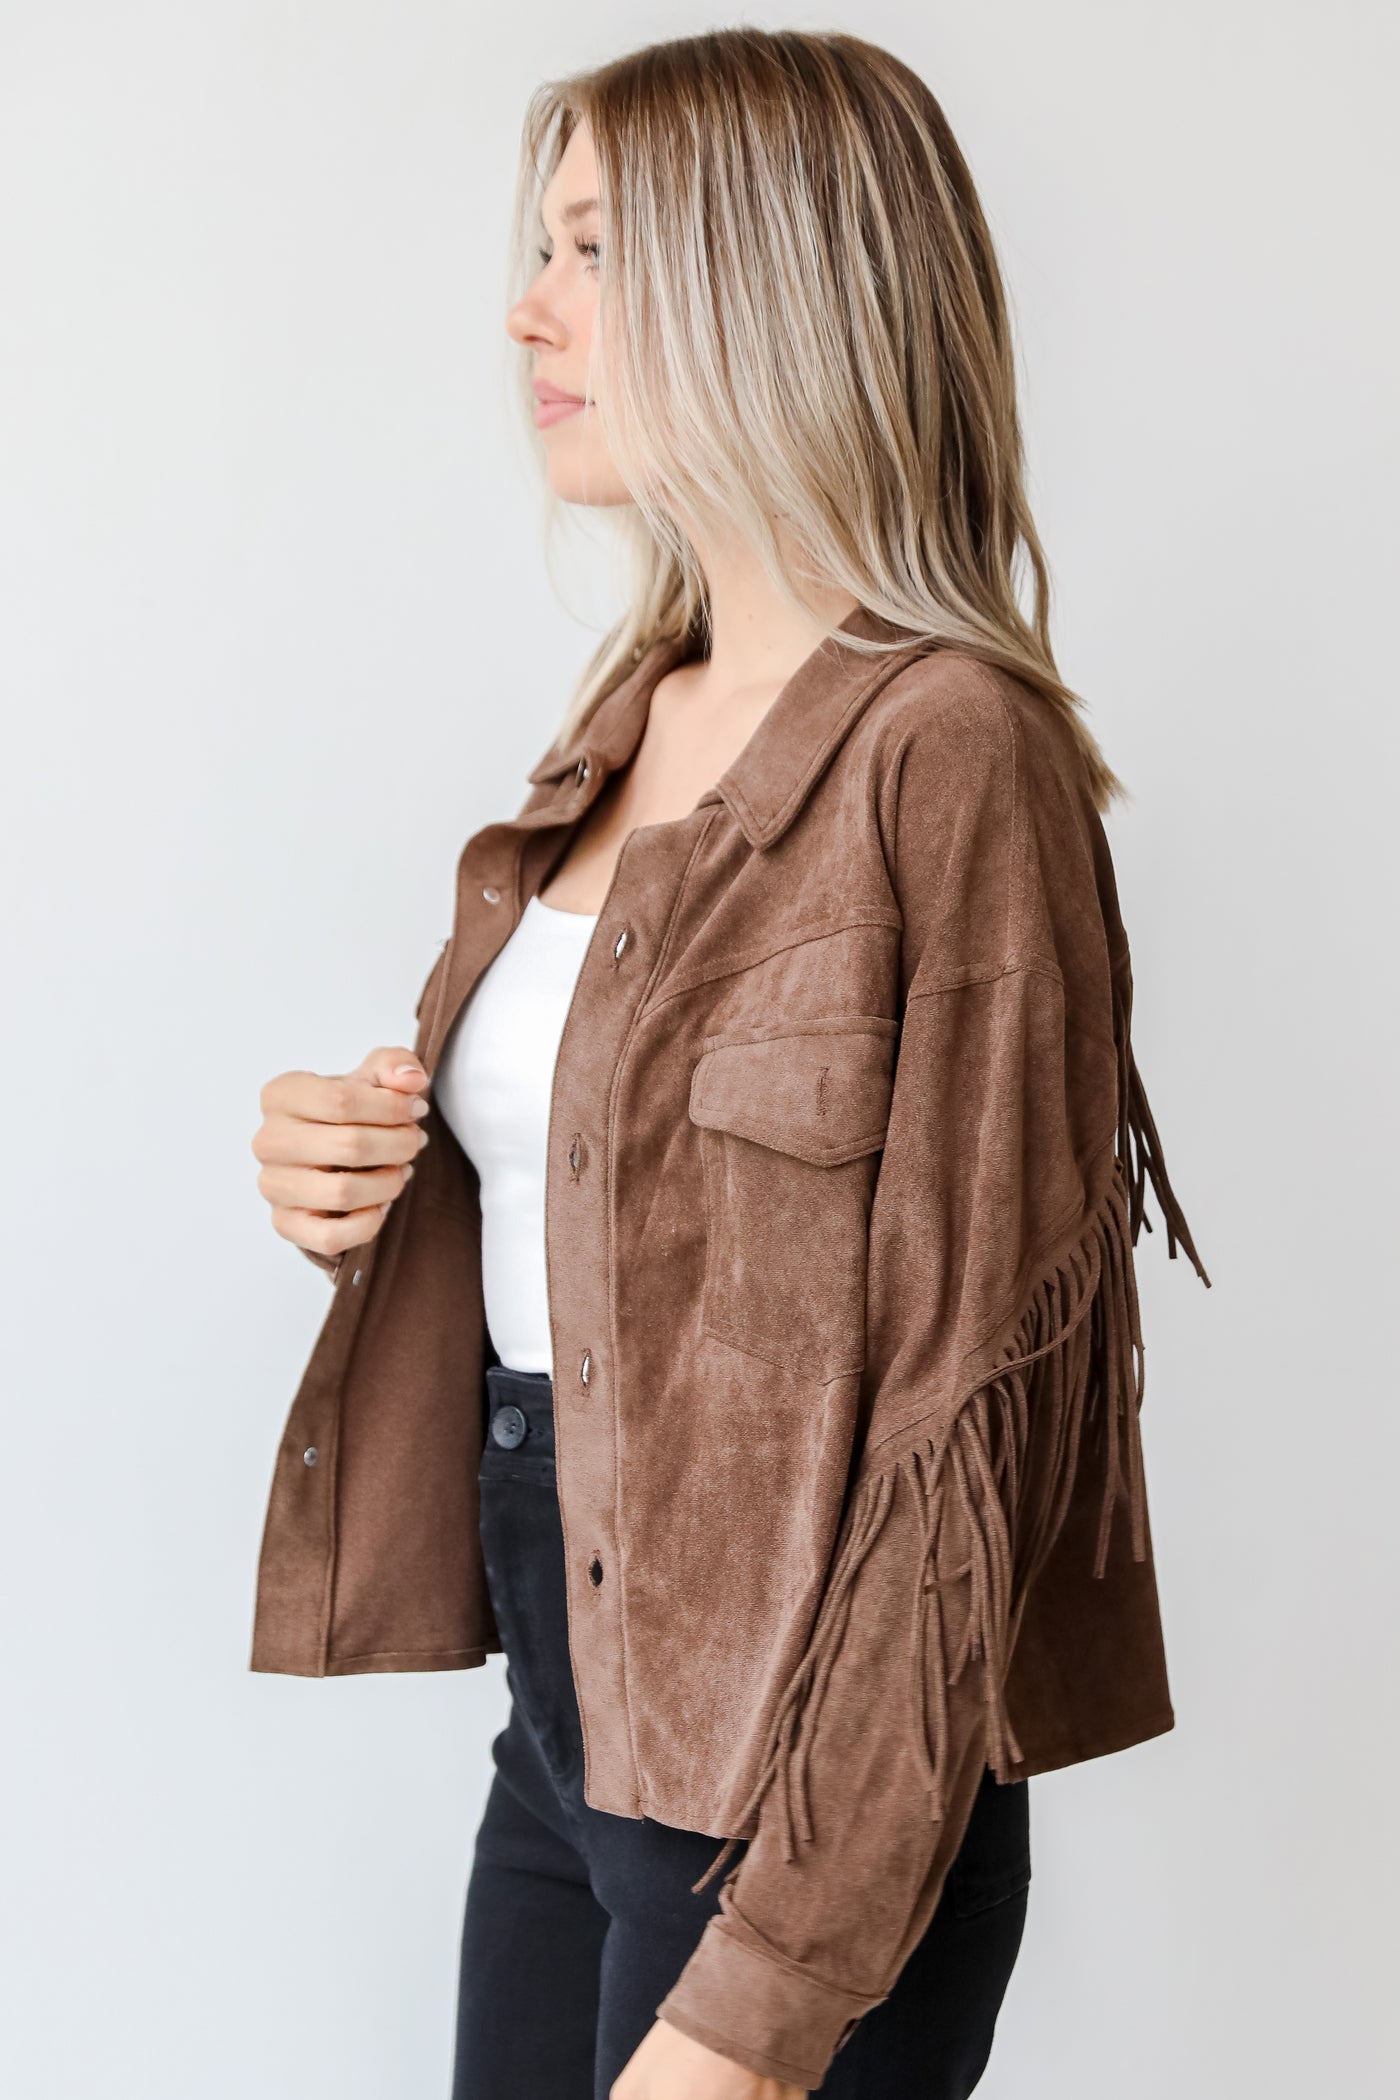 brown fringe jacket side view